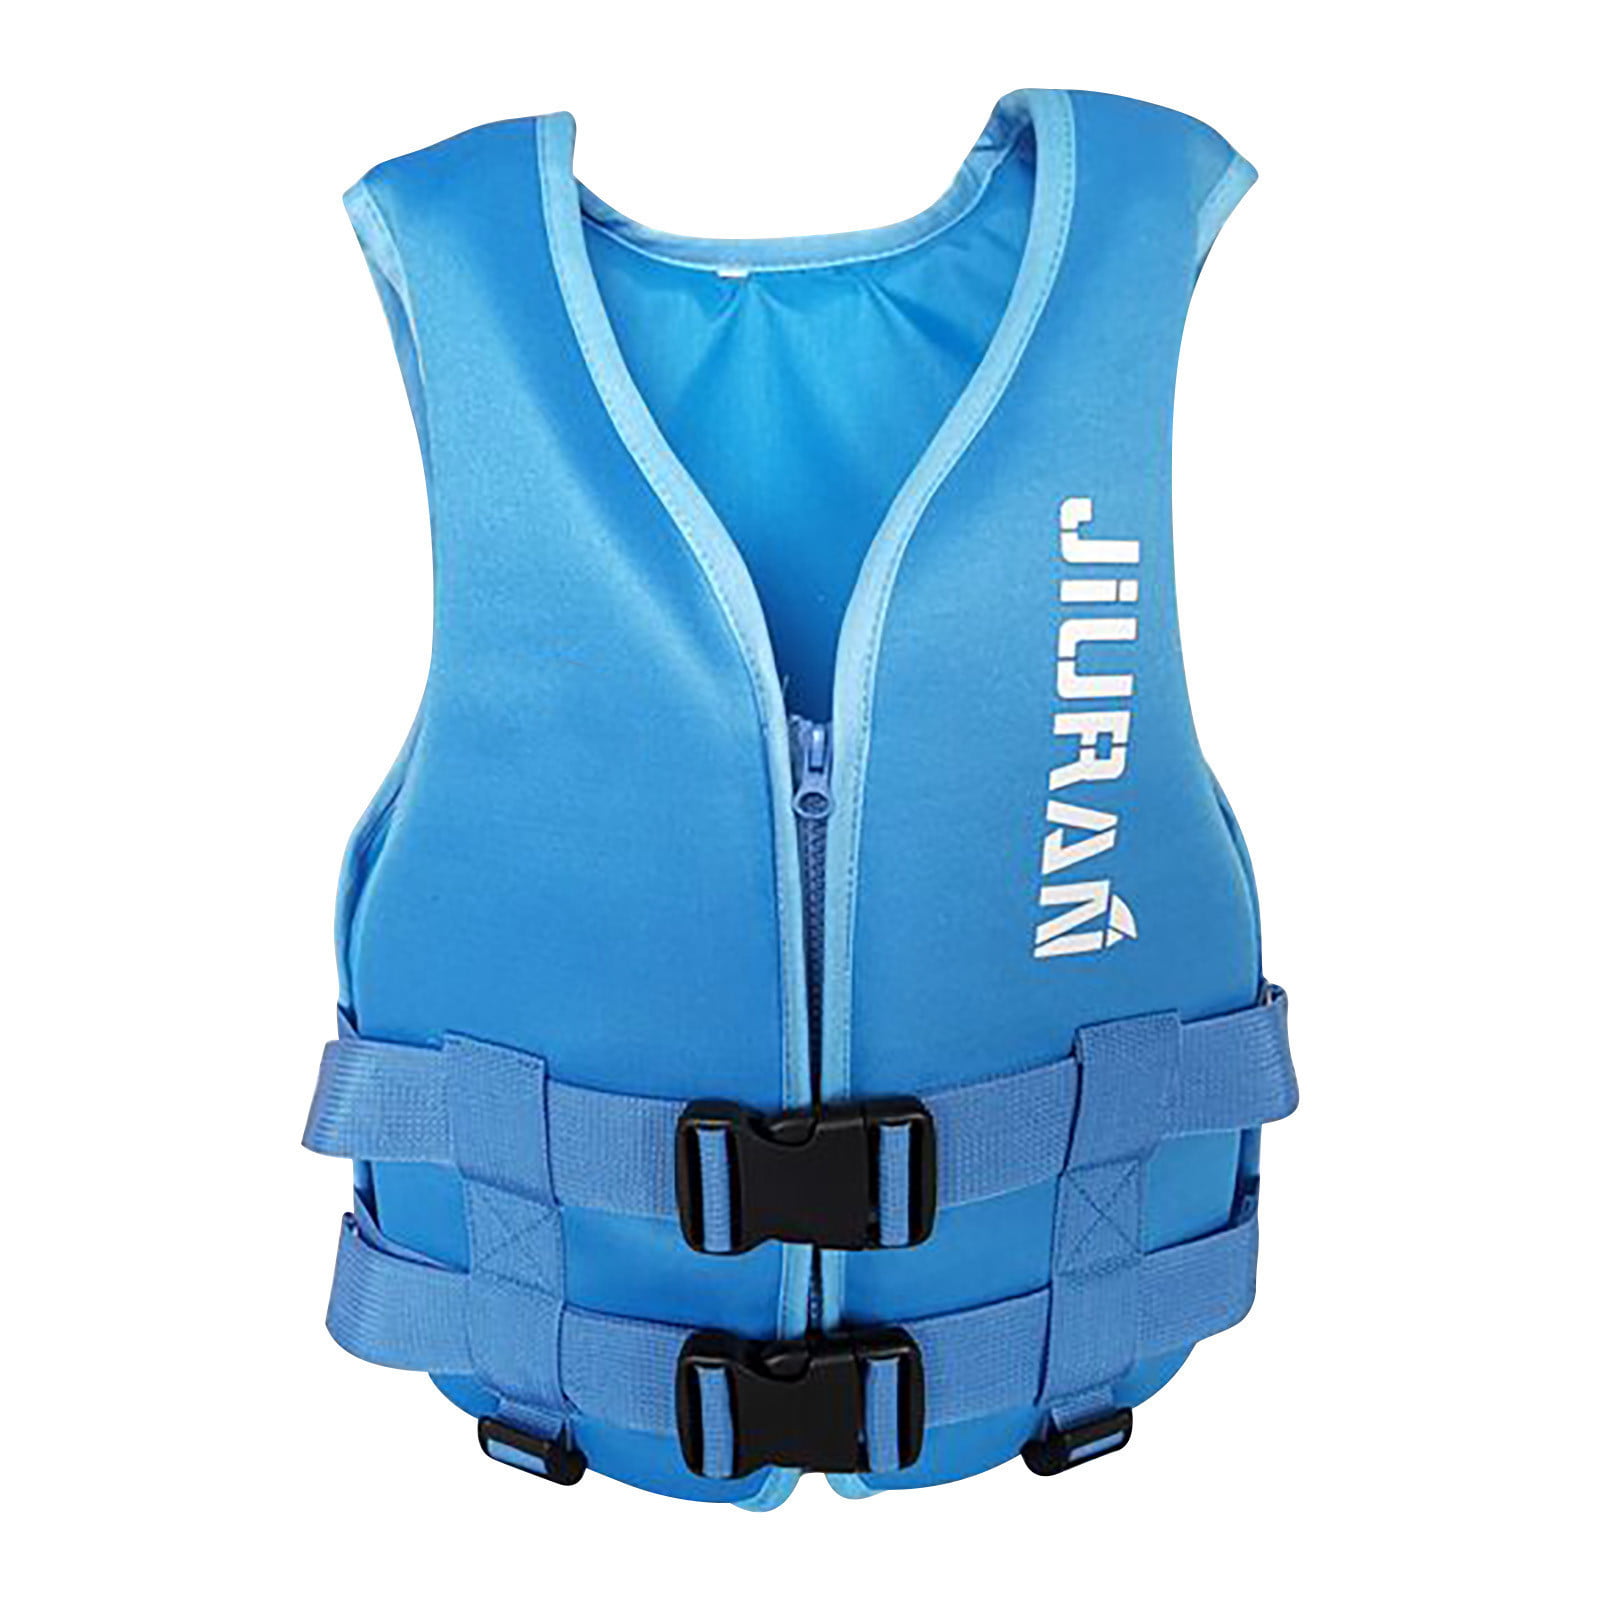 Whistle Adult Life Jacket Swim Buoyancy Aid Vest Sailing Kayak Safety Swimwear 